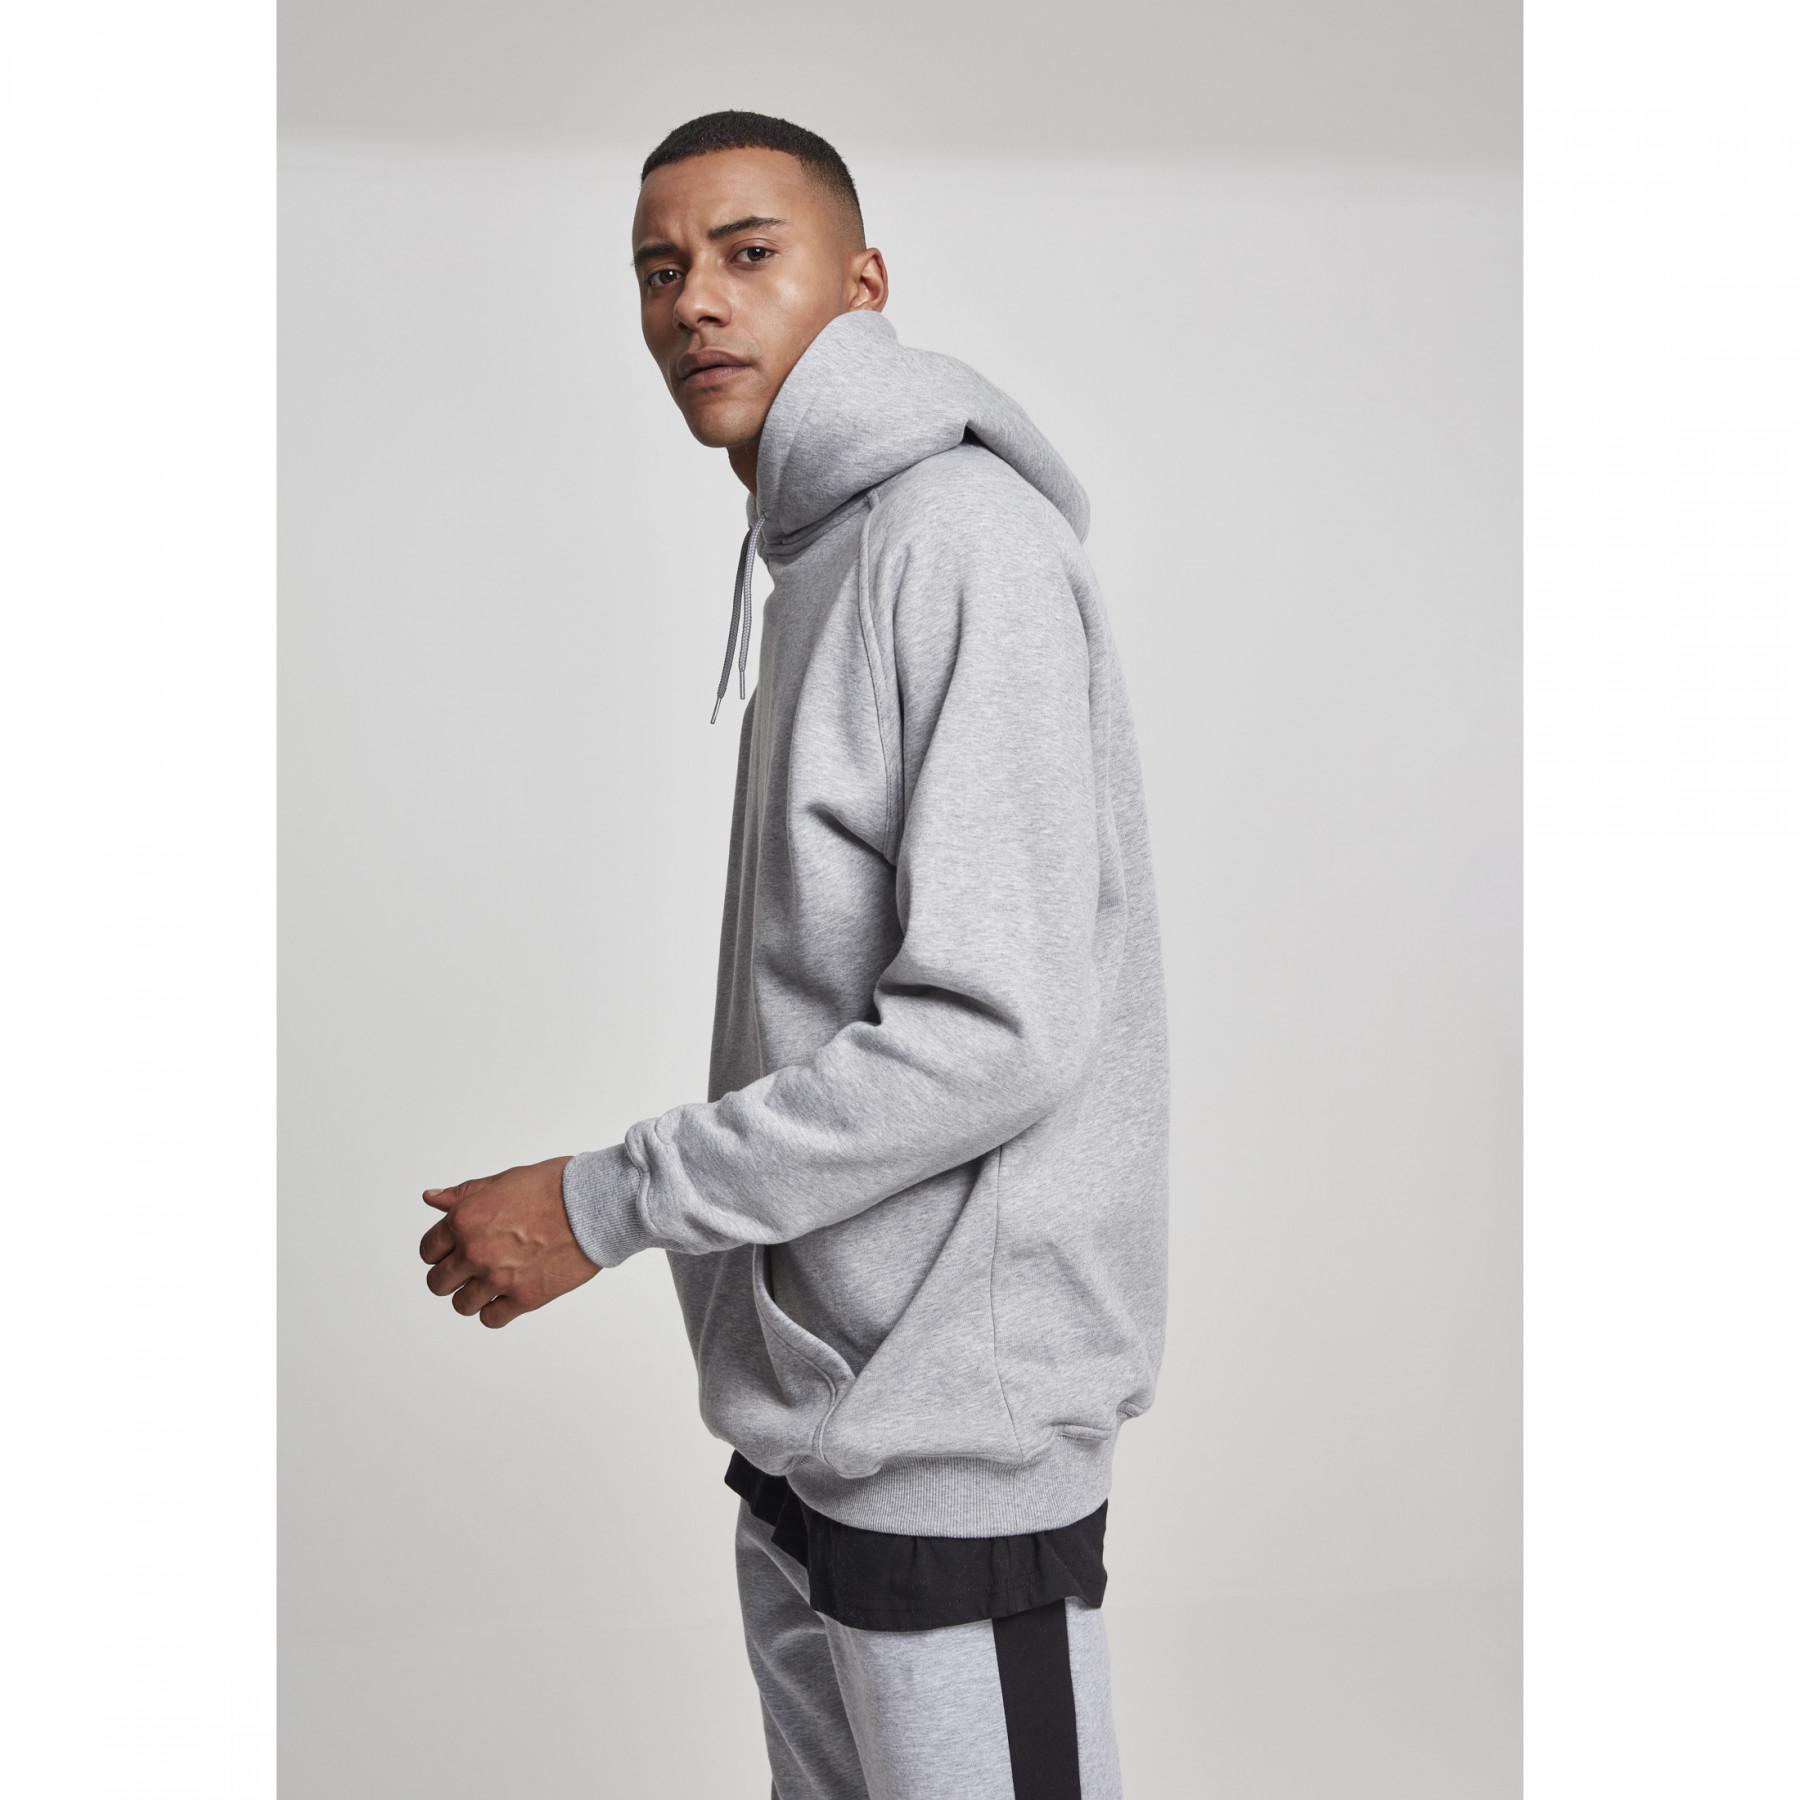 Hooded sweatshirt urban Classic tall - Urban Classics - Sweats Streetwear -  Sweats & Hoodies